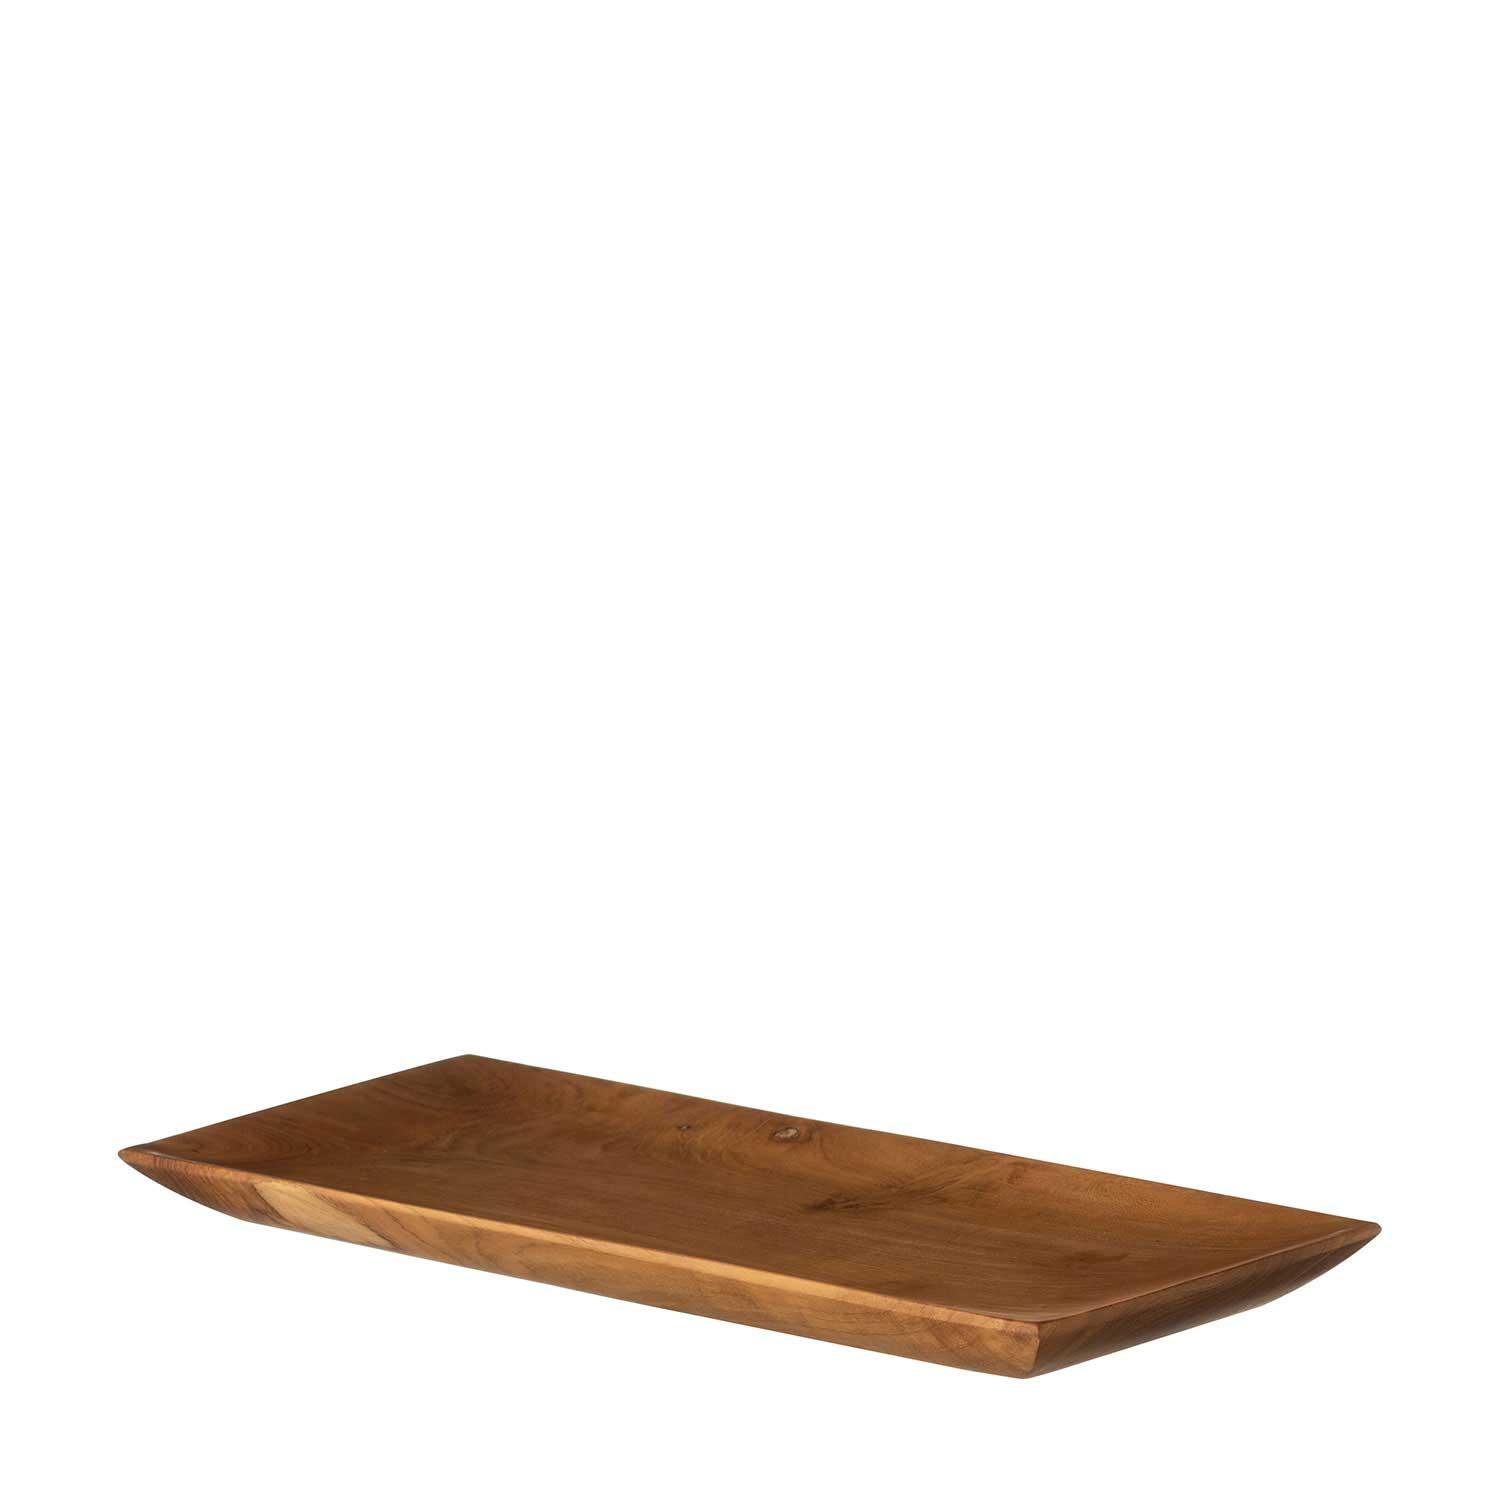 Small Wooden Rectangular Plate